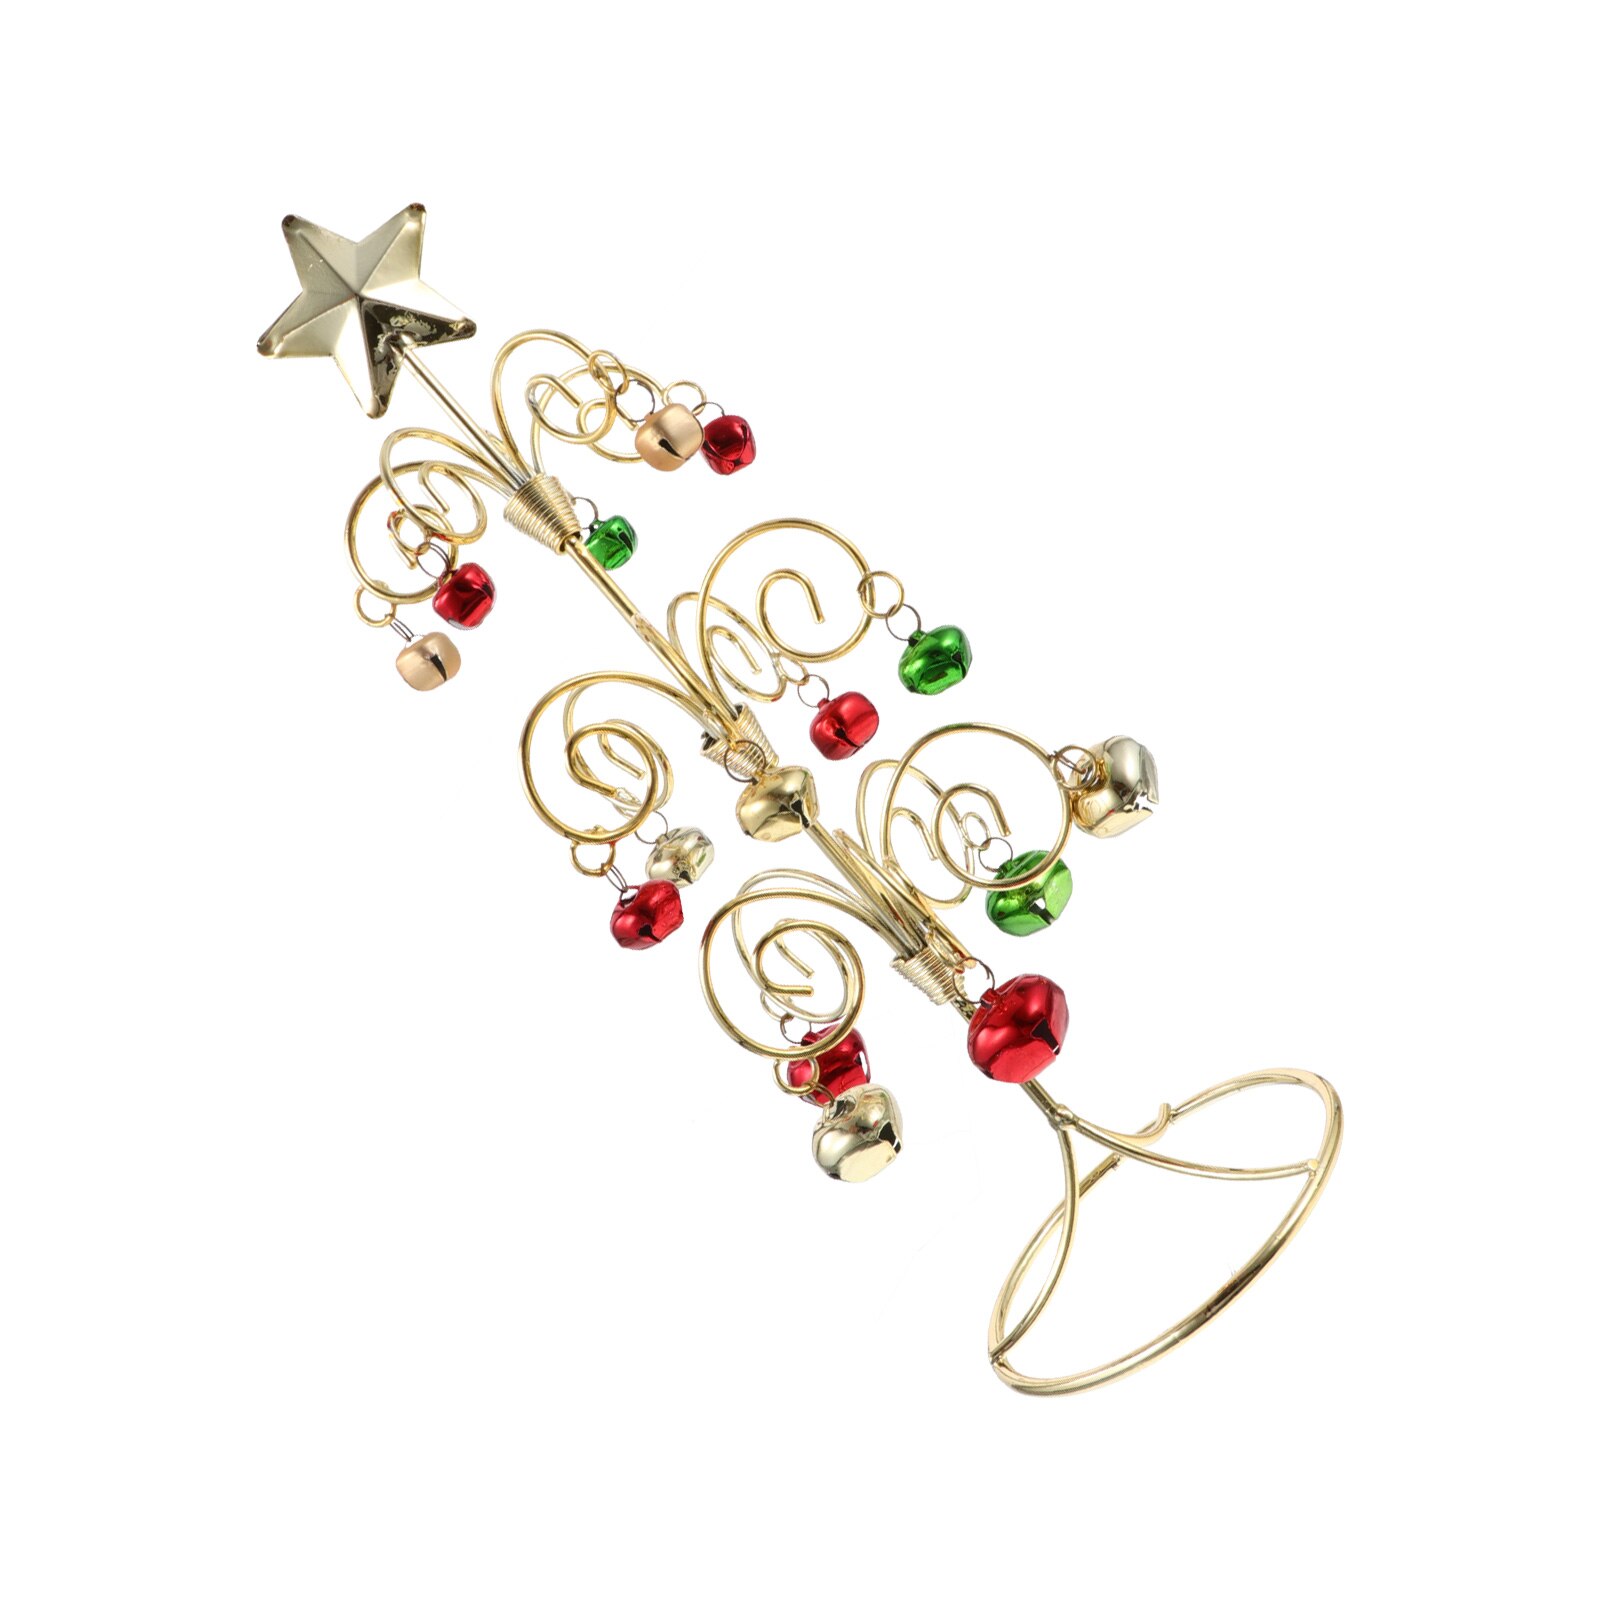 1 Pcs Xmas Versiering Kerst Decor Kerst Ornament Crafted Decoratieve Herbruikbare Diy Kerstboom Voor Party A50